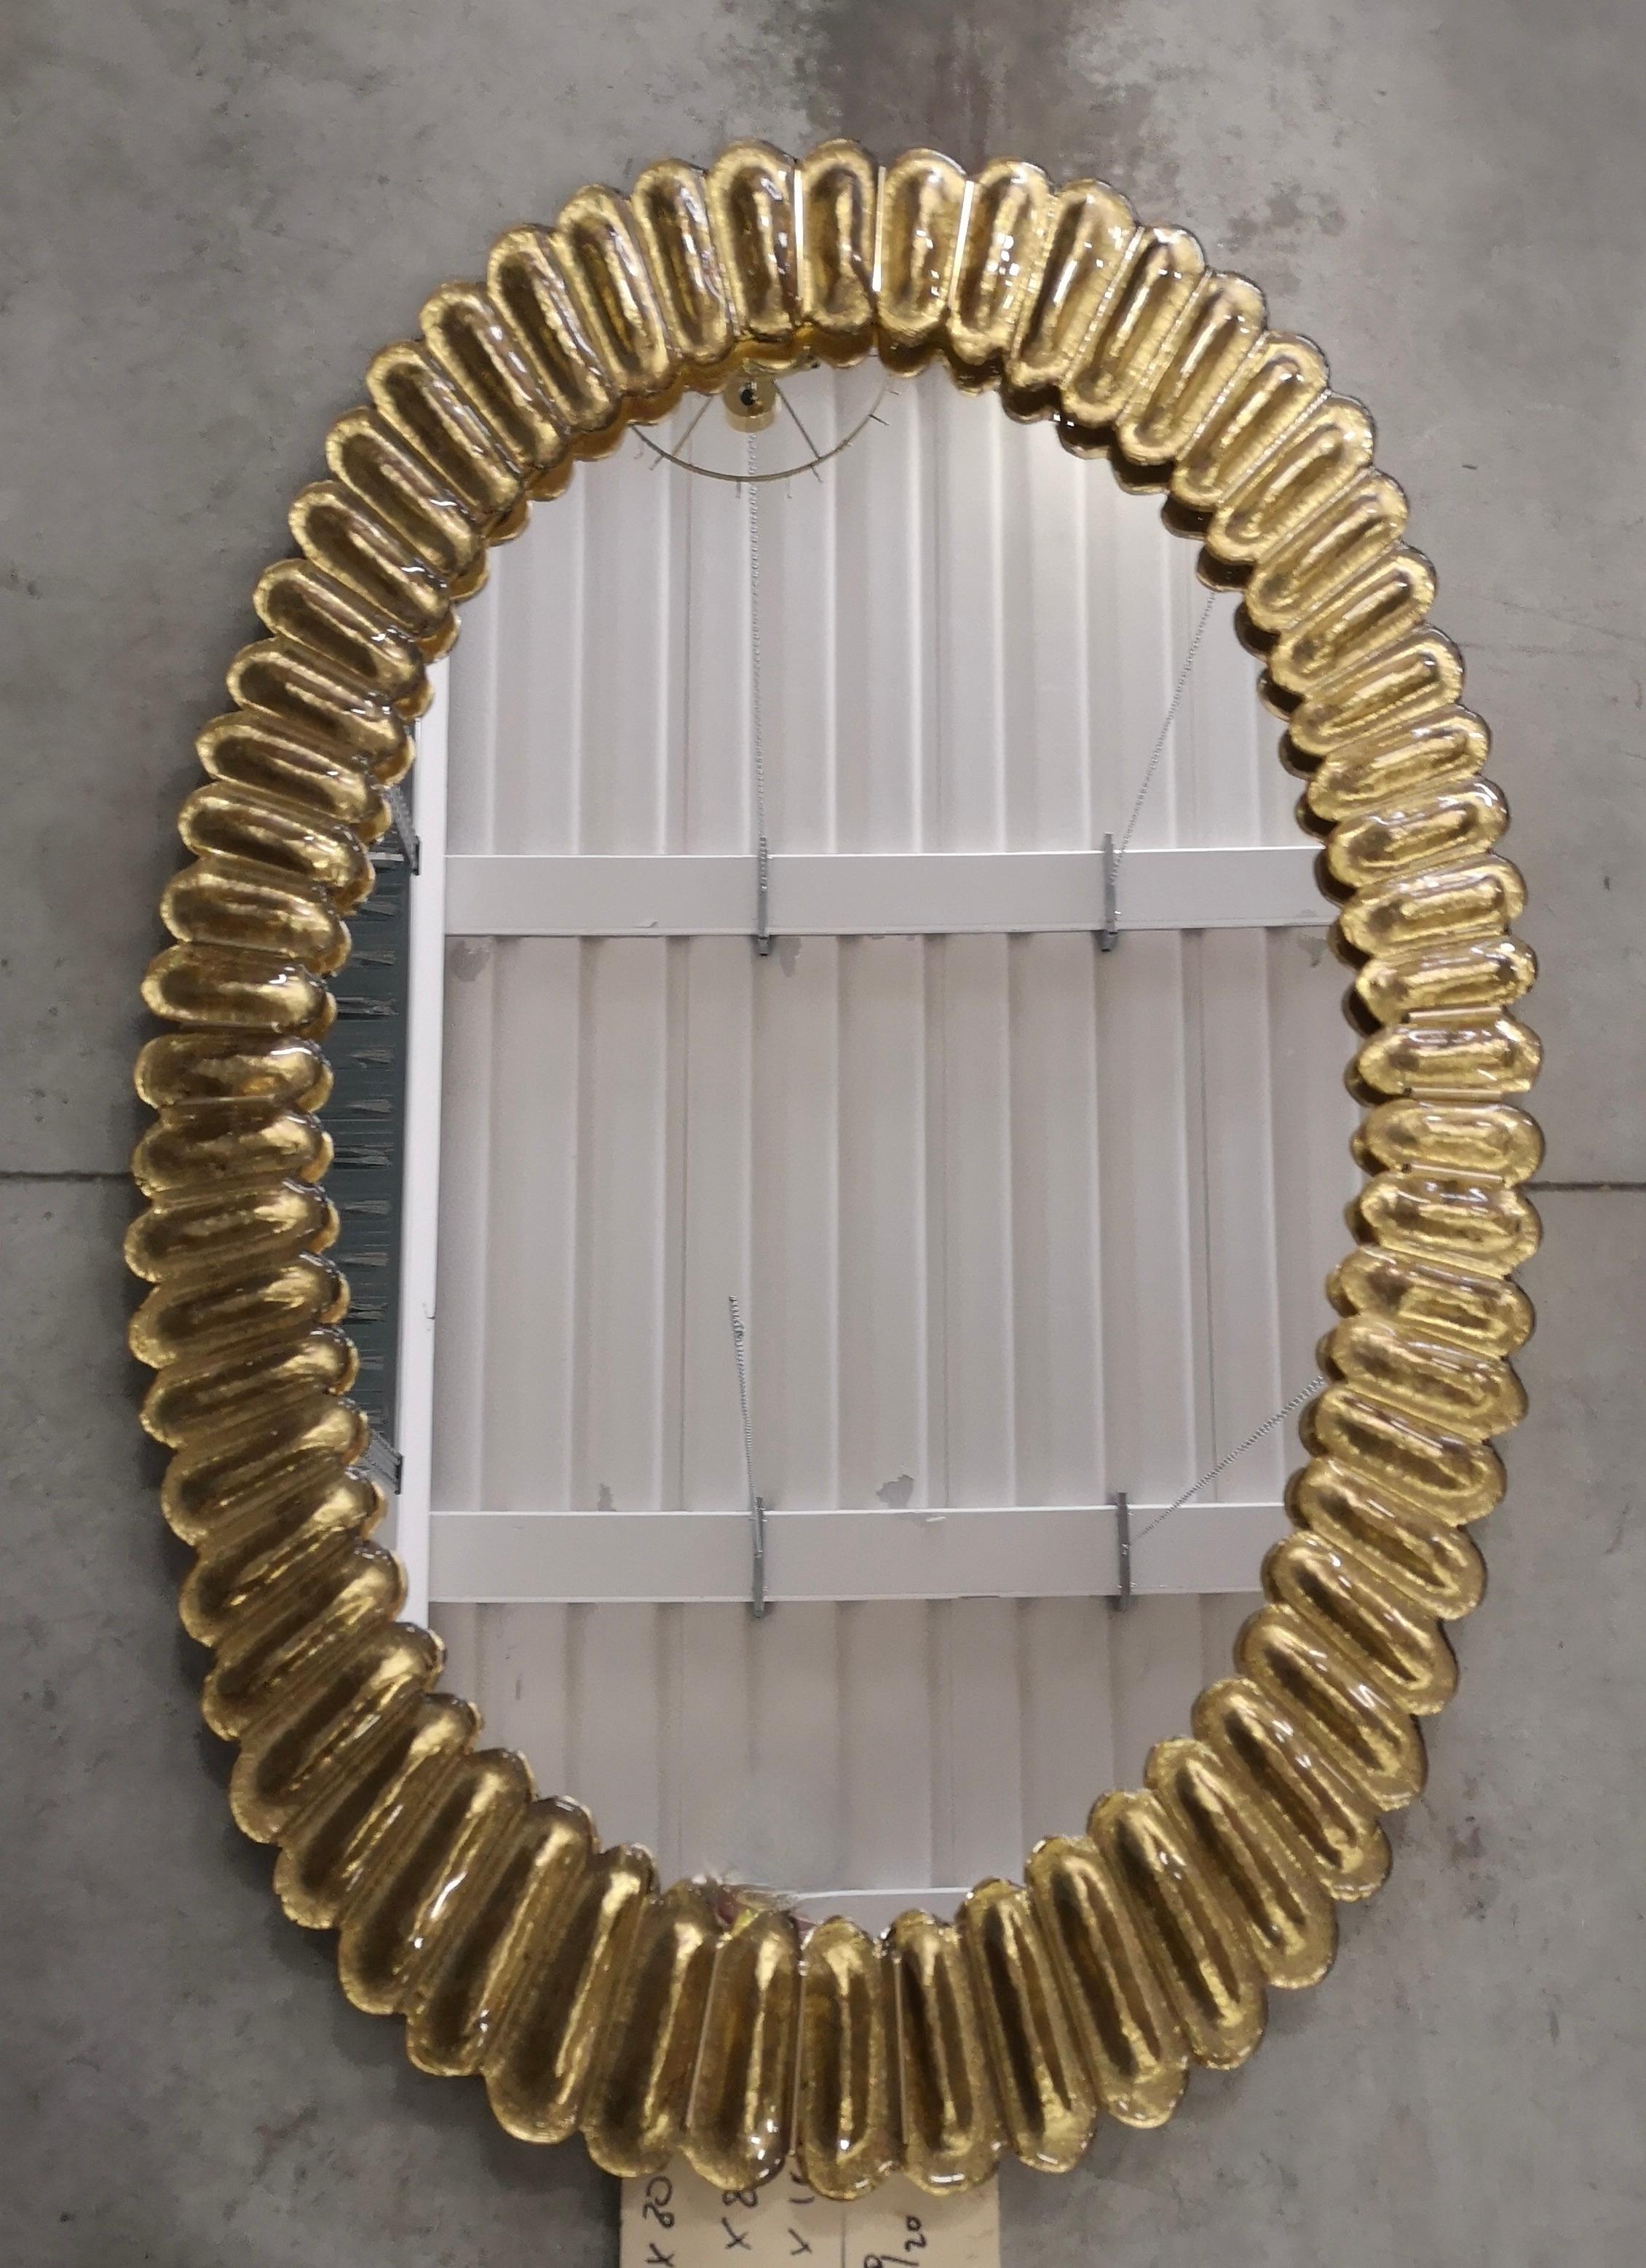 Superbe miroir en verre Murano couleur or flamboyant, Venise. Un miroir qui, à lui seul, meublera votre environnement domestique.

Le miroir présente une structure arrière en bois, sur laquelle quatre sections en verre doré Murano sont montées pour